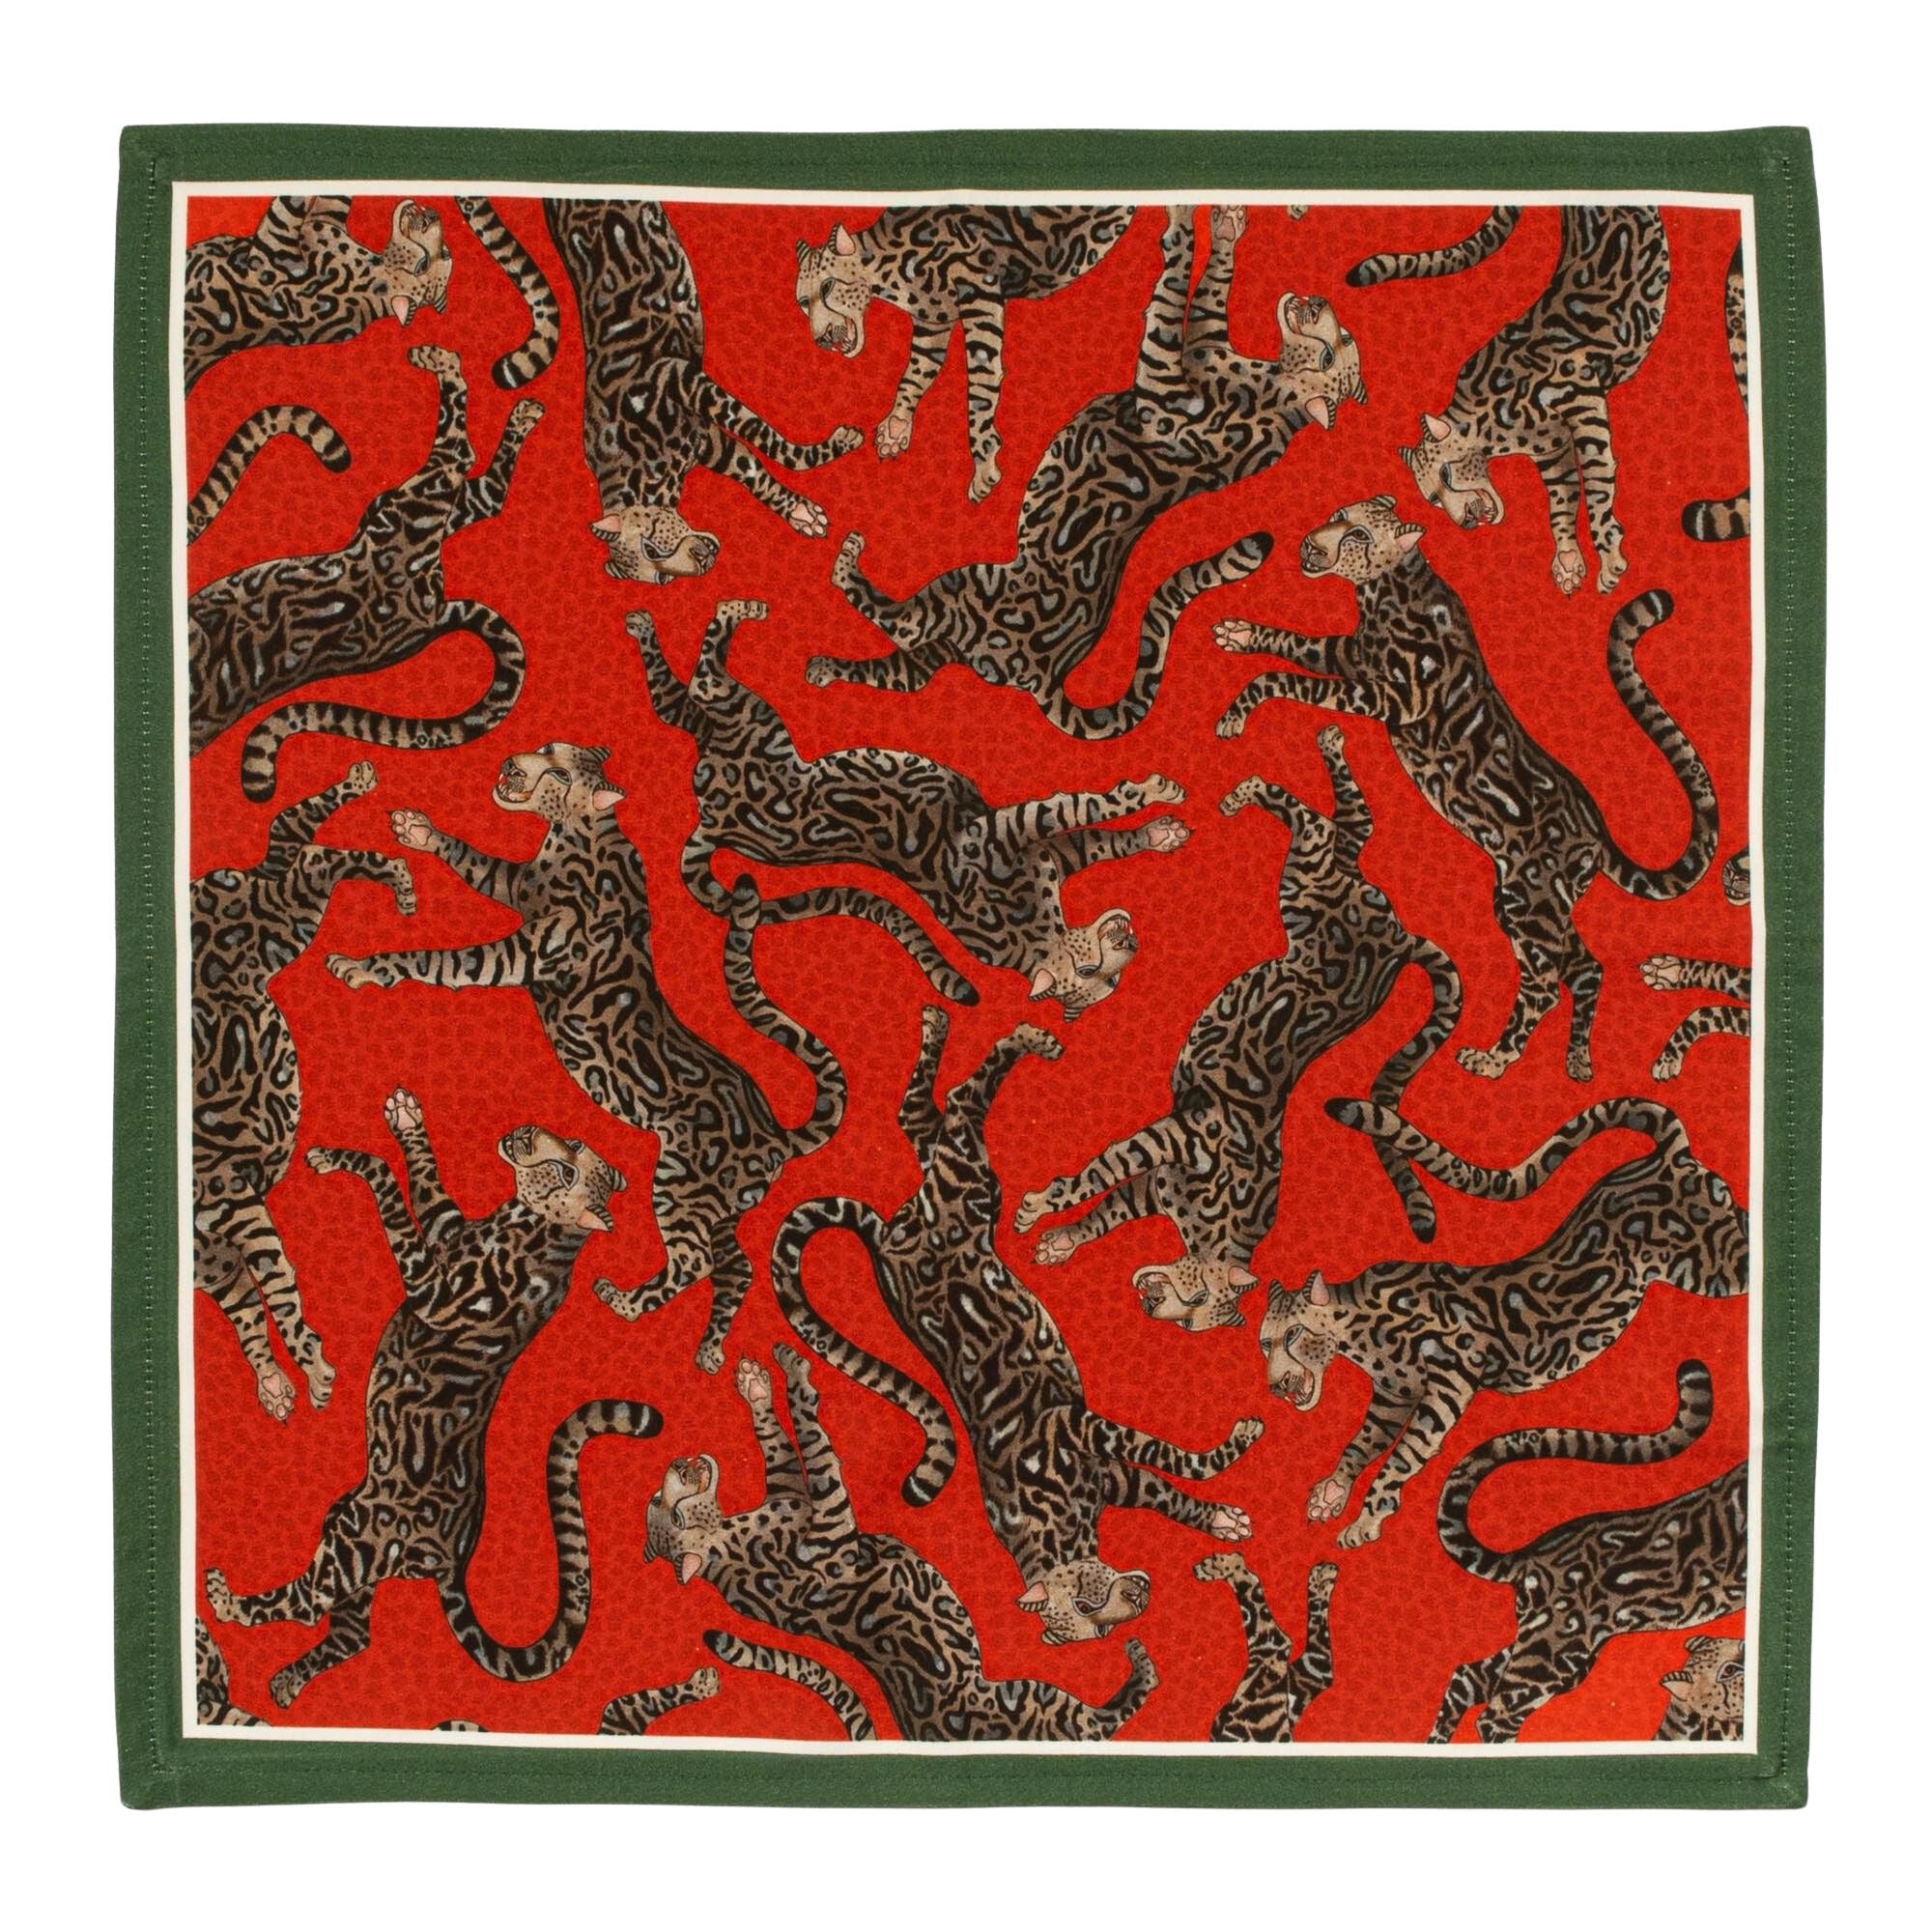 Cheetah Kings Napkins (Pair) - Royal Red